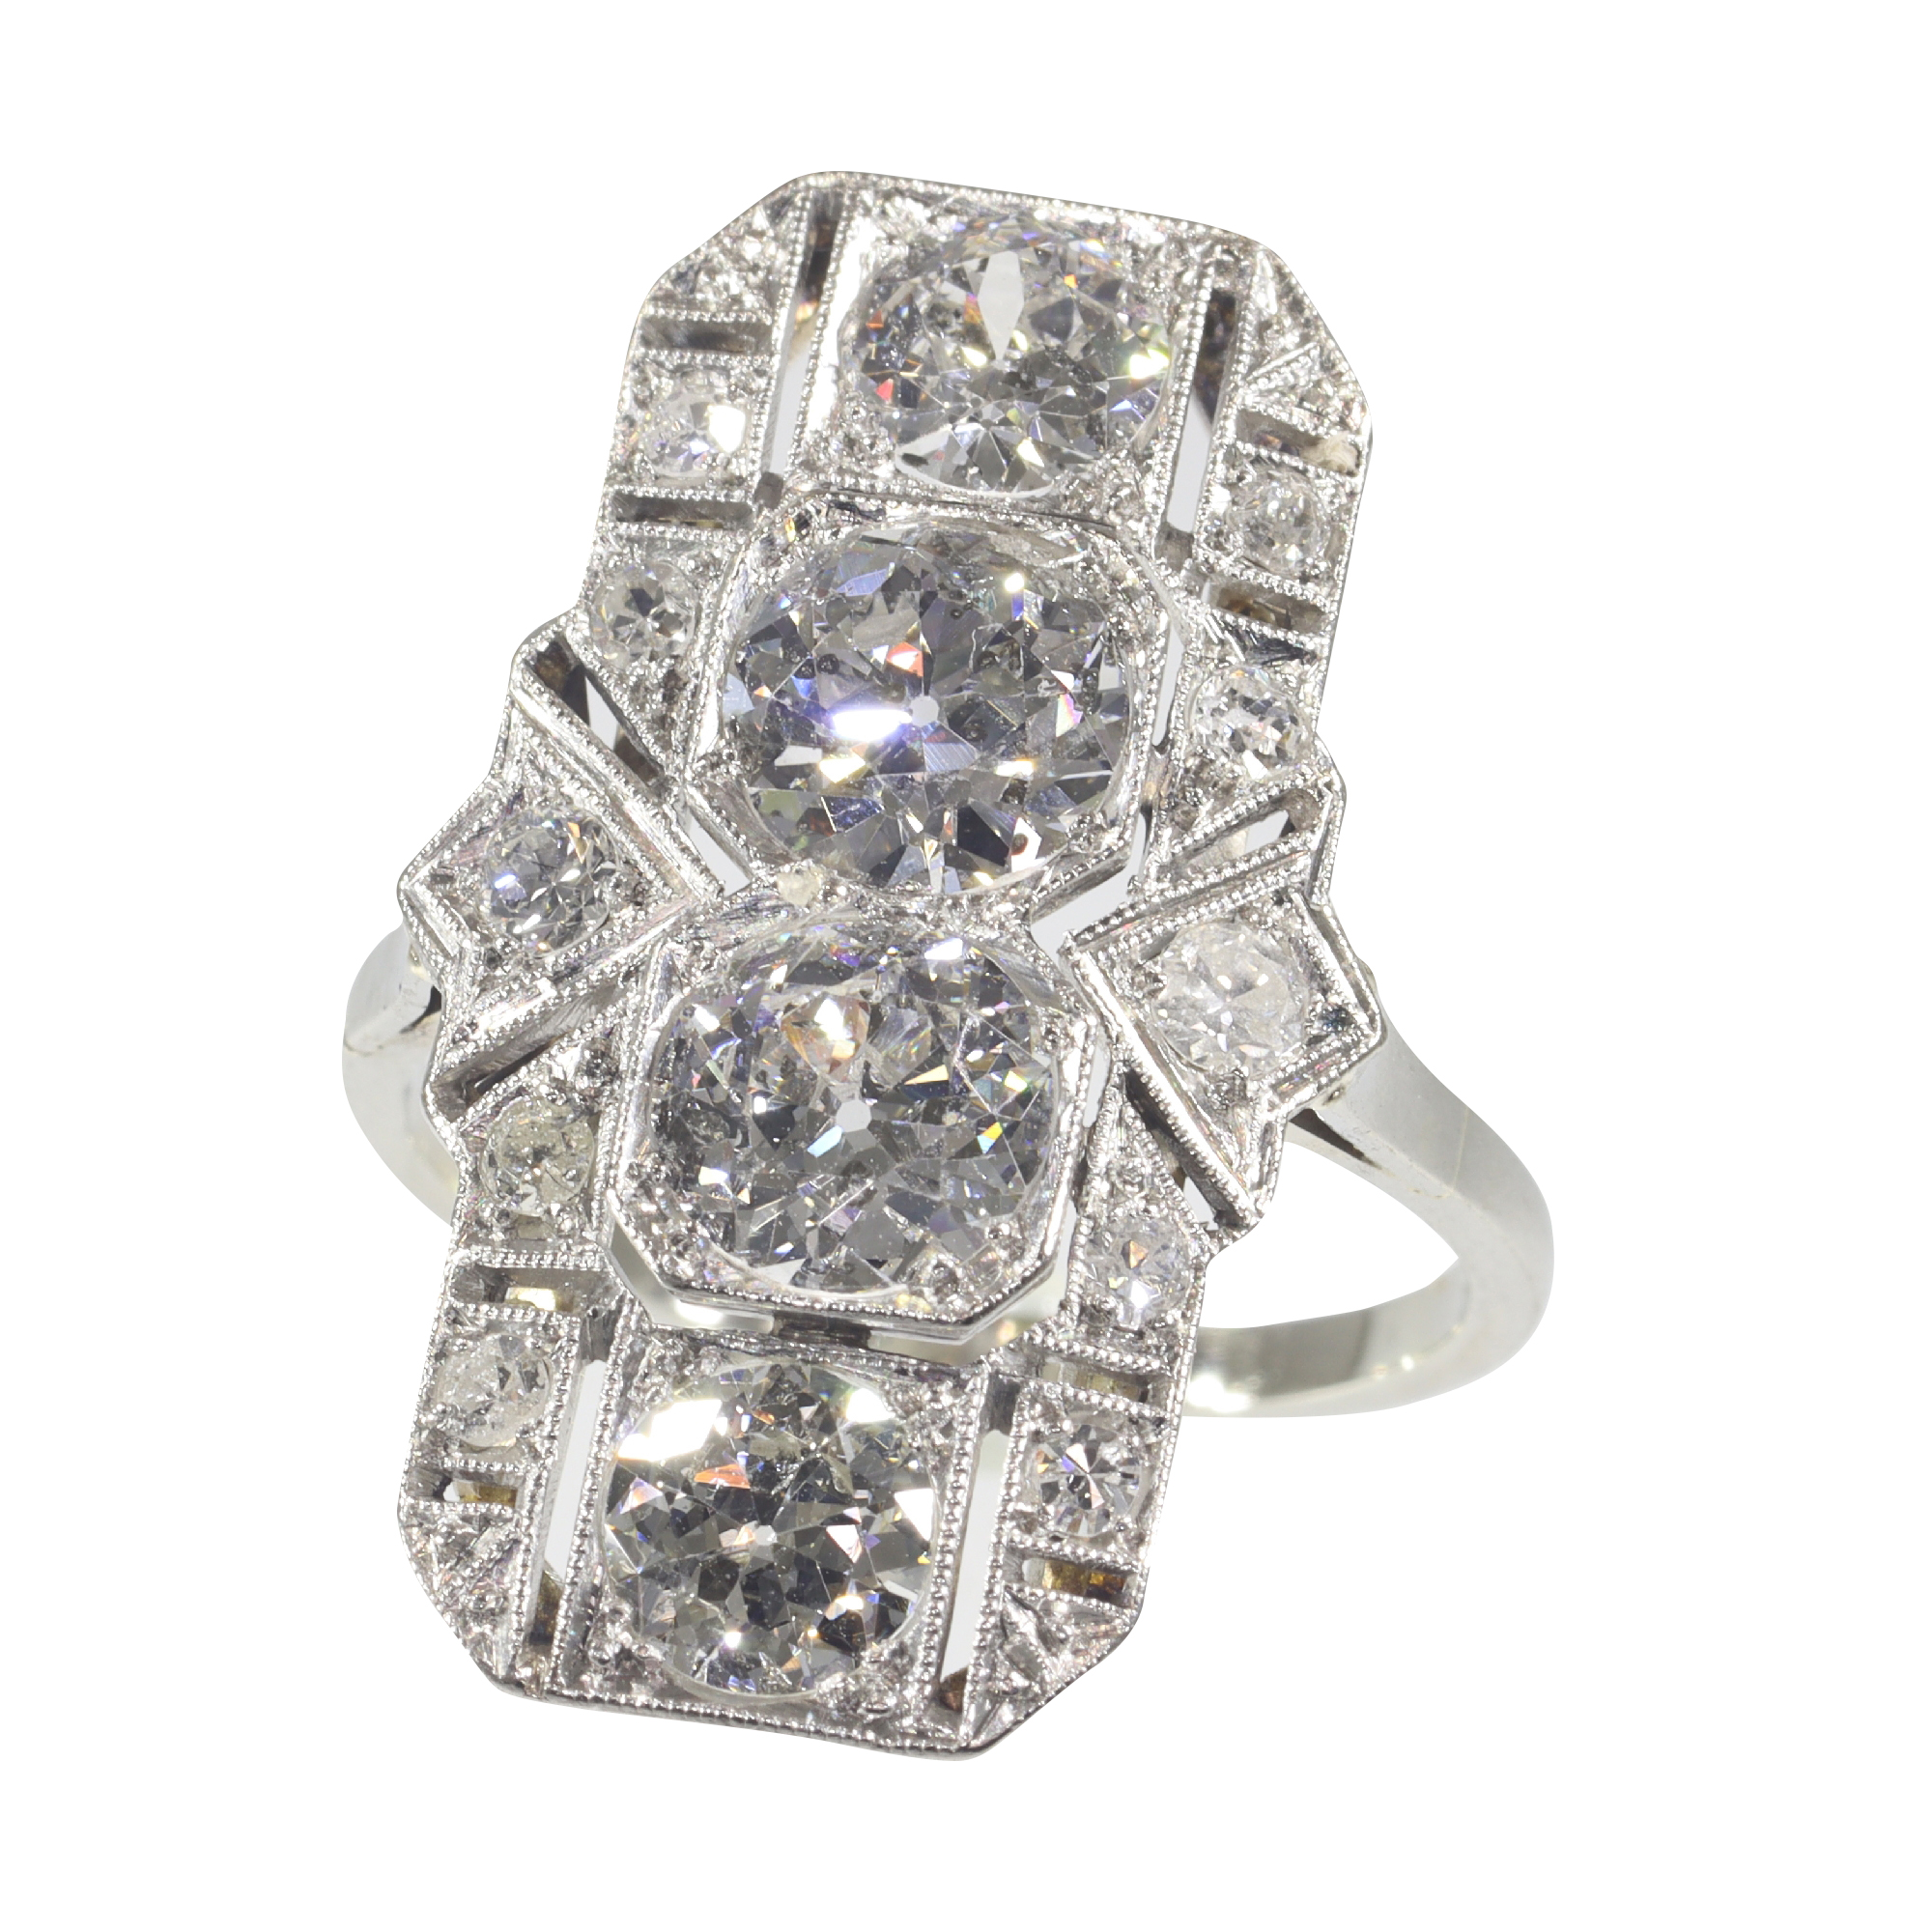 Deco Romance: A 1930's Diamond Ring